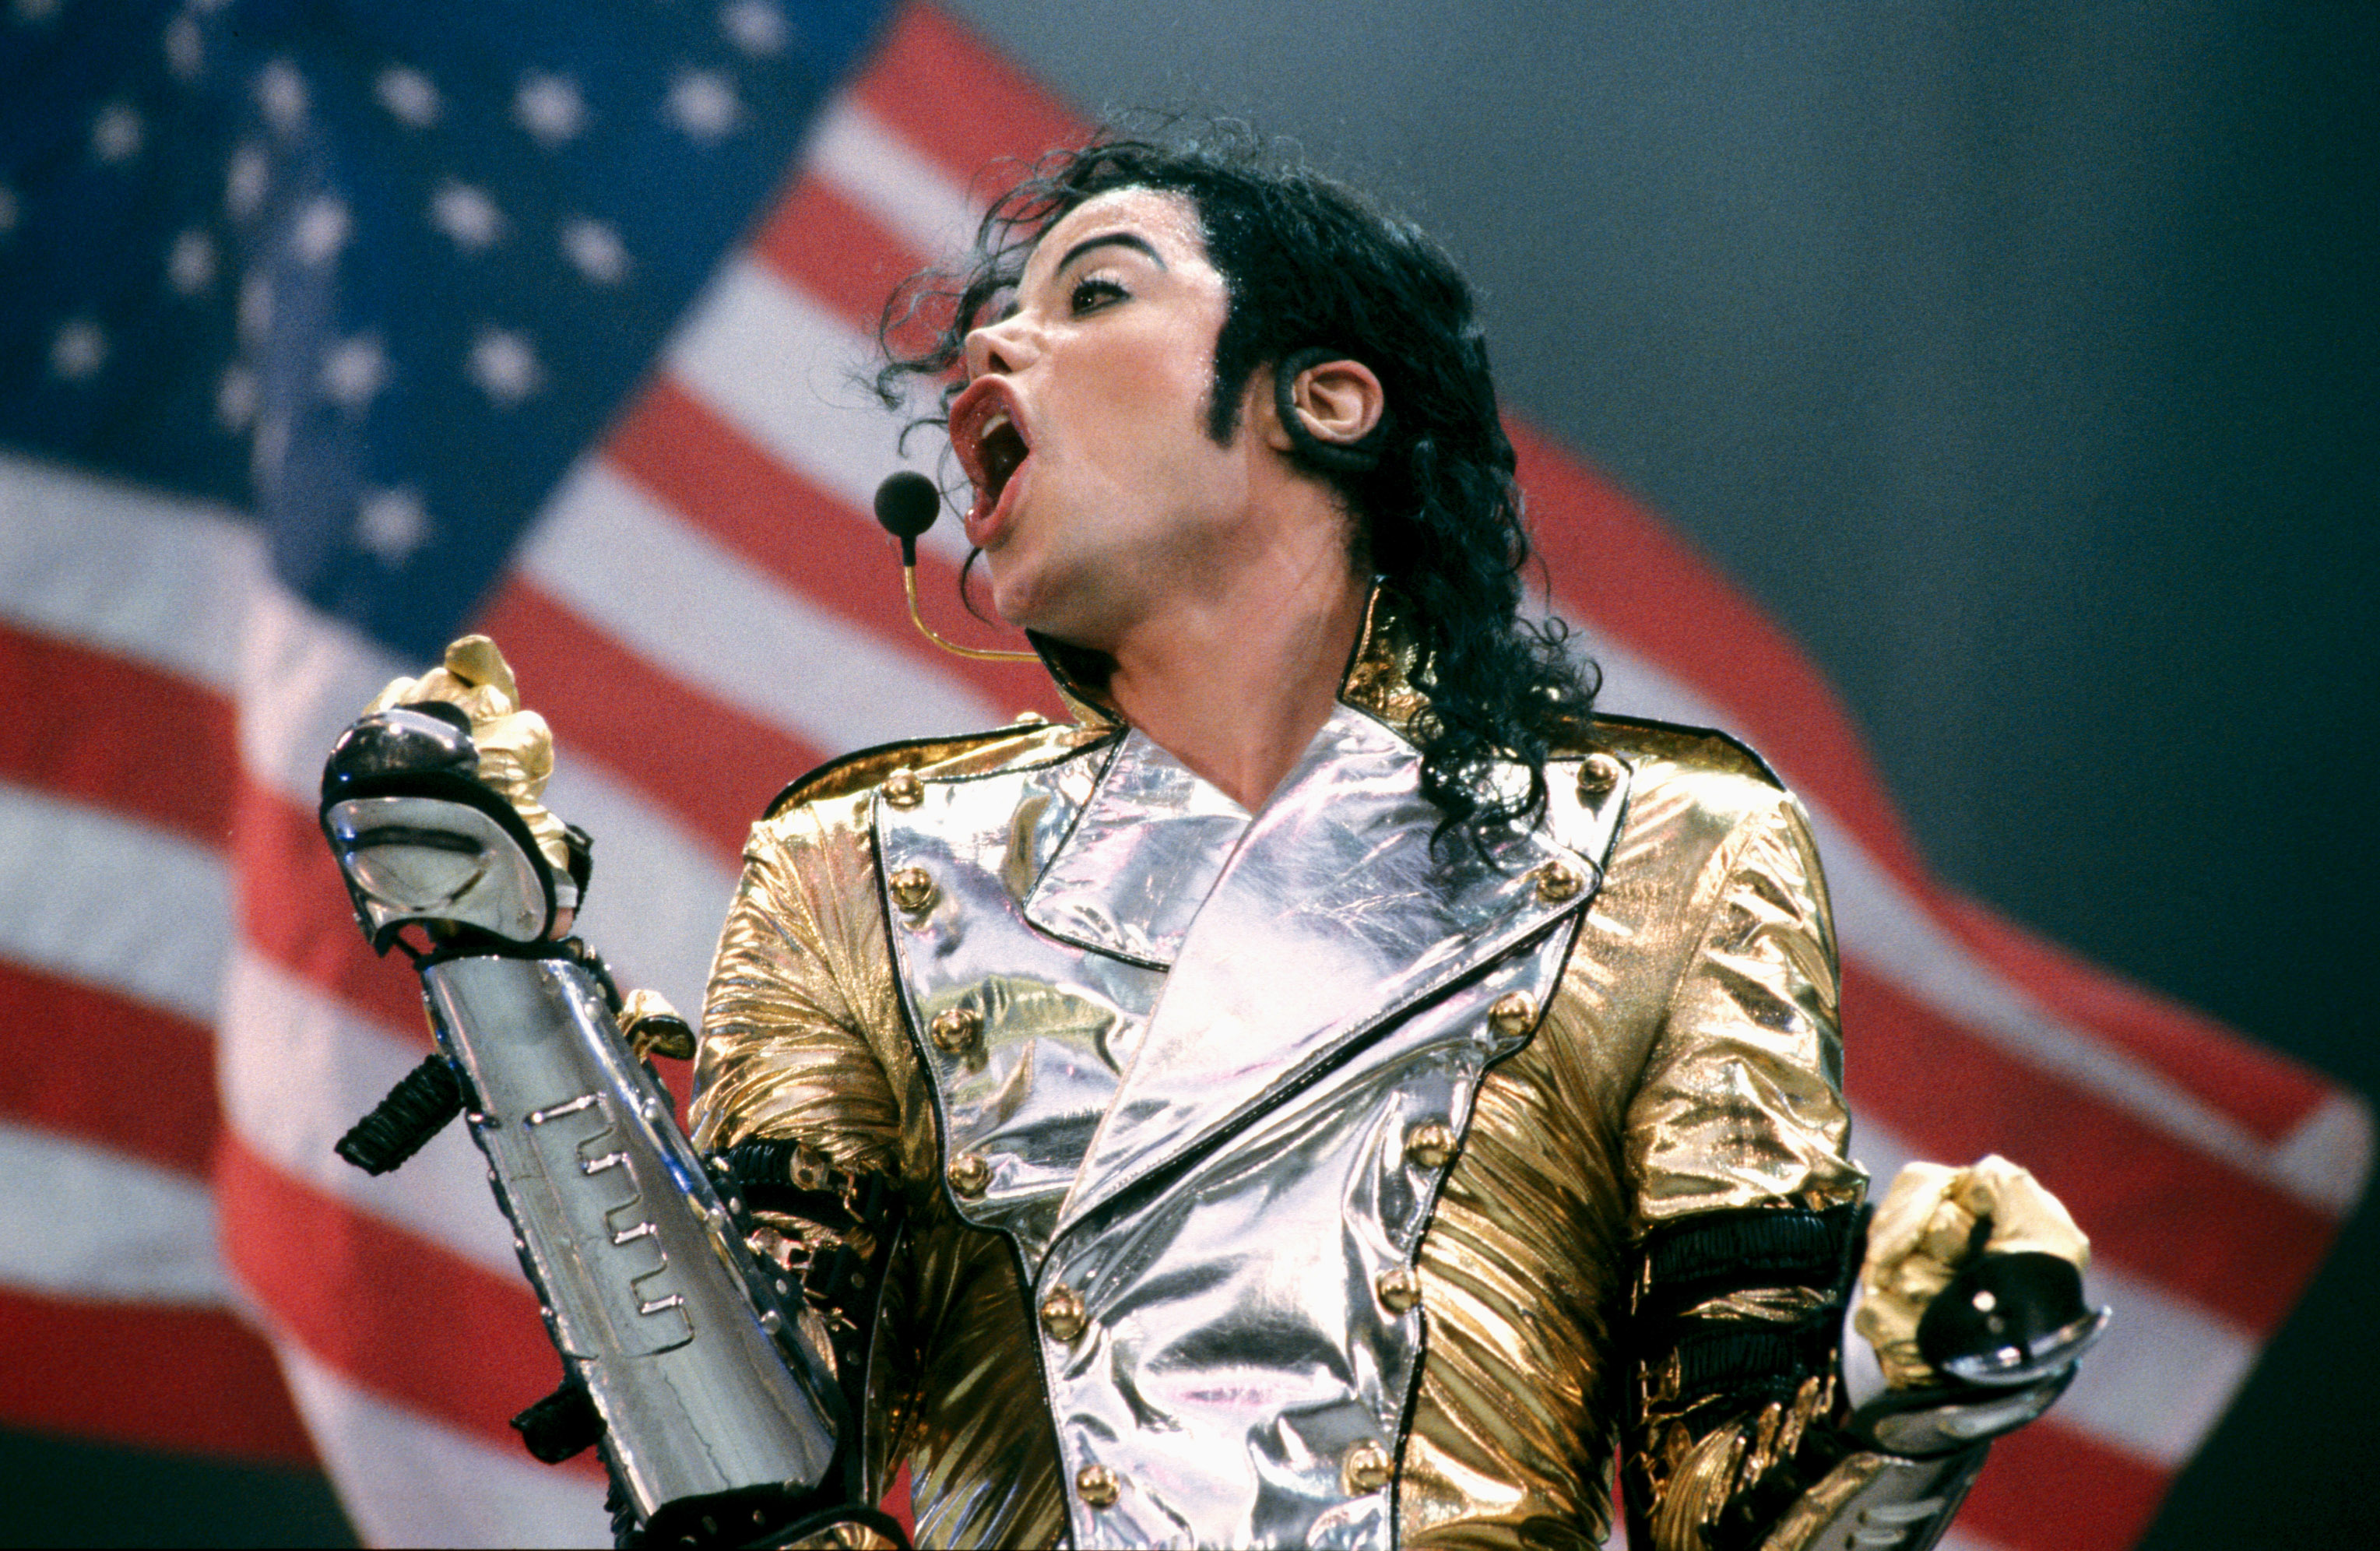 Il 25 e 26 novembre “Michael Jackson – life, death and legacy” arriva al cinema – le sale in Piemonte che lo proiettano